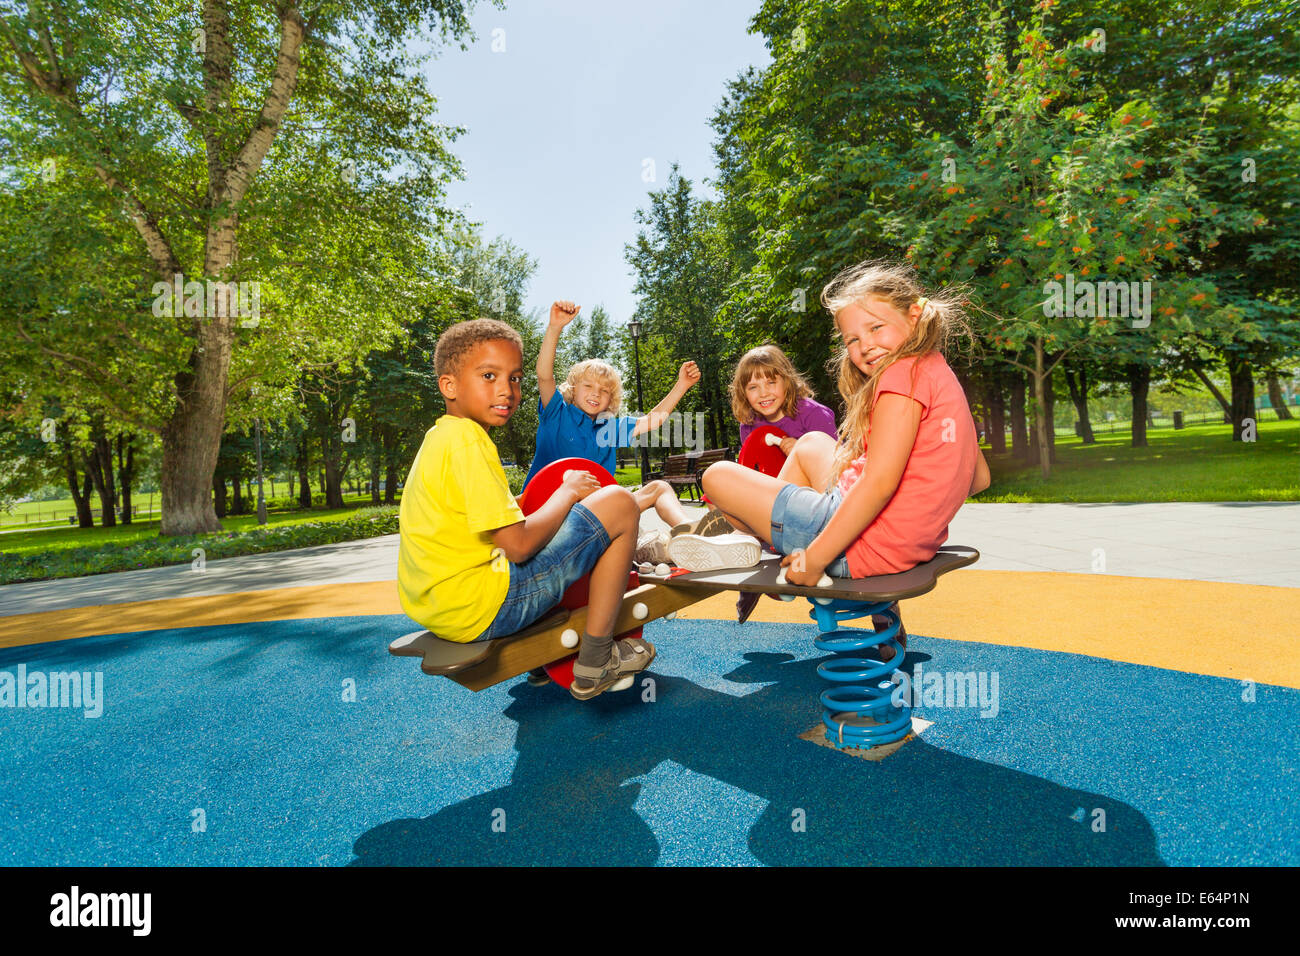 Kinder sitzen zusammen auf Spielplatz-Karussell Stockfoto